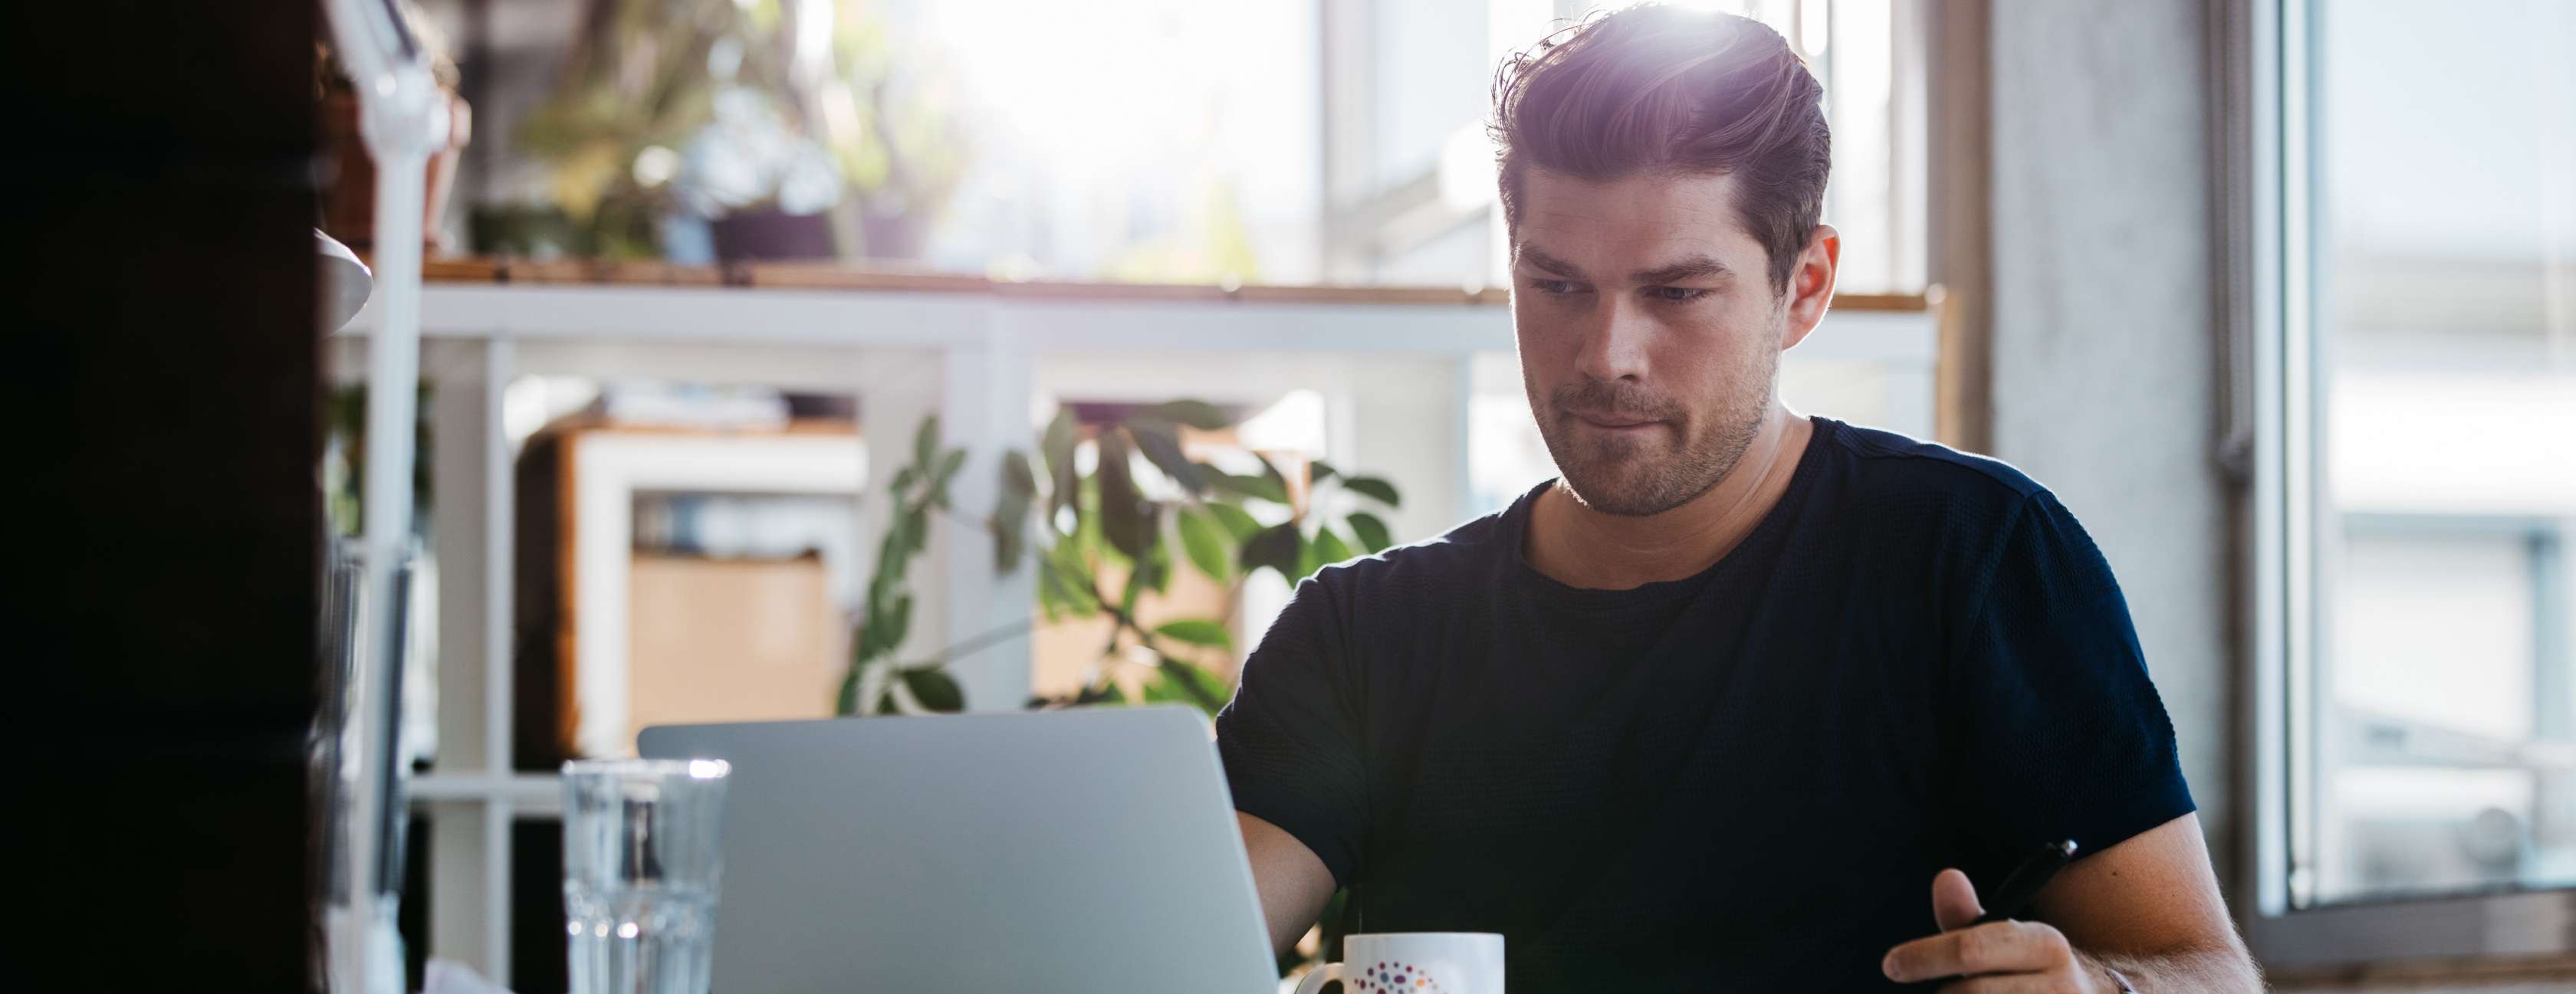 Mann im schwarzen T-Shirt schaut nachdenklich in einen Laptop, vor ihm eine bunte Kaffeetasse